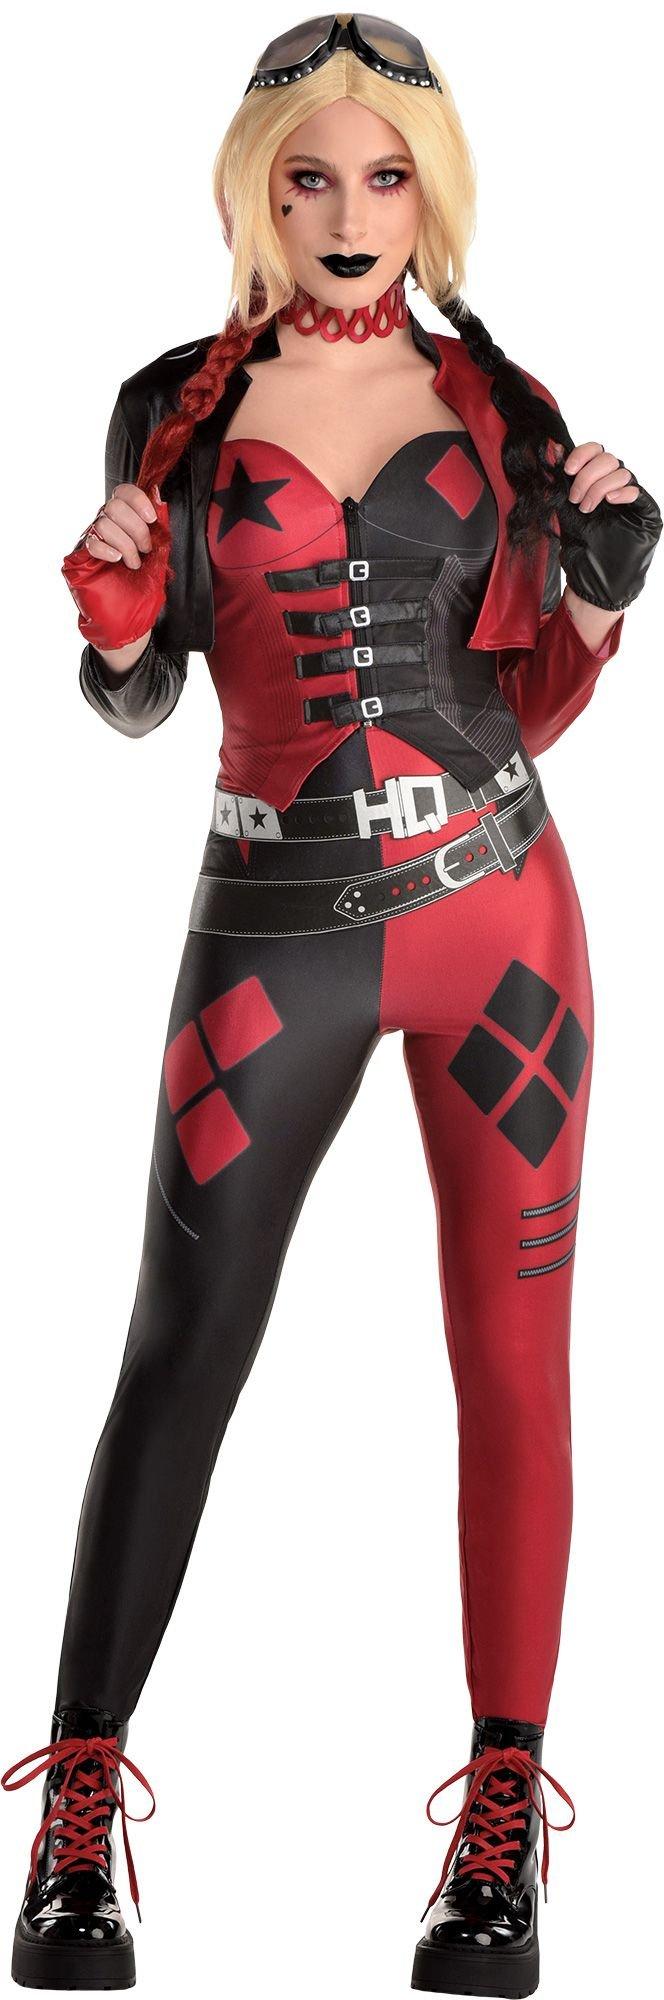 Harley Quinn Suicide Squad Costume Outlet 100 Save 52 Jlcatj Gob Mx